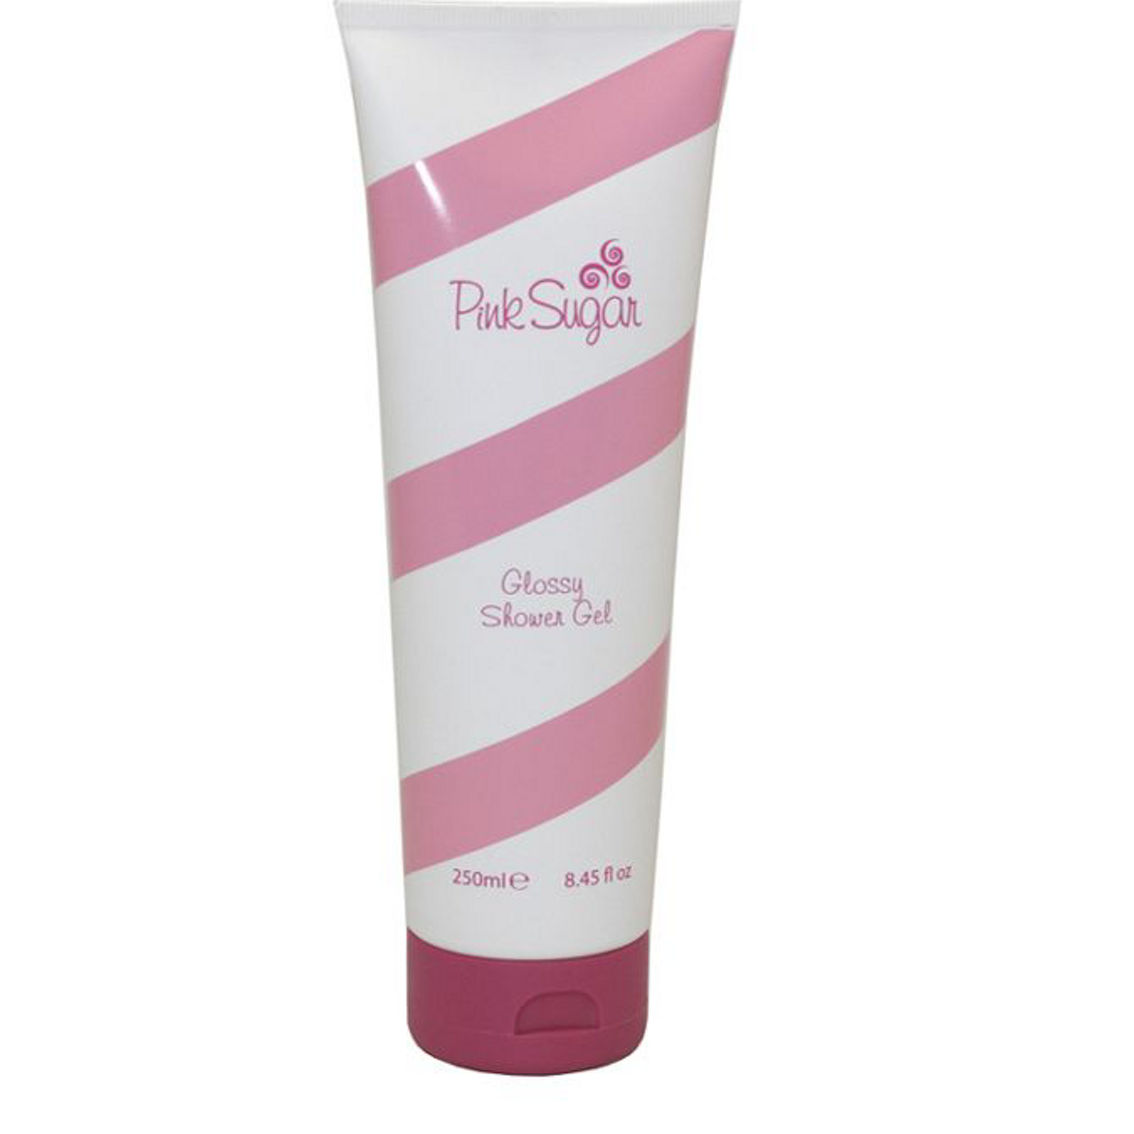 Aquolina Pink Sugar Shower Gel for Women - Image 2 of 2